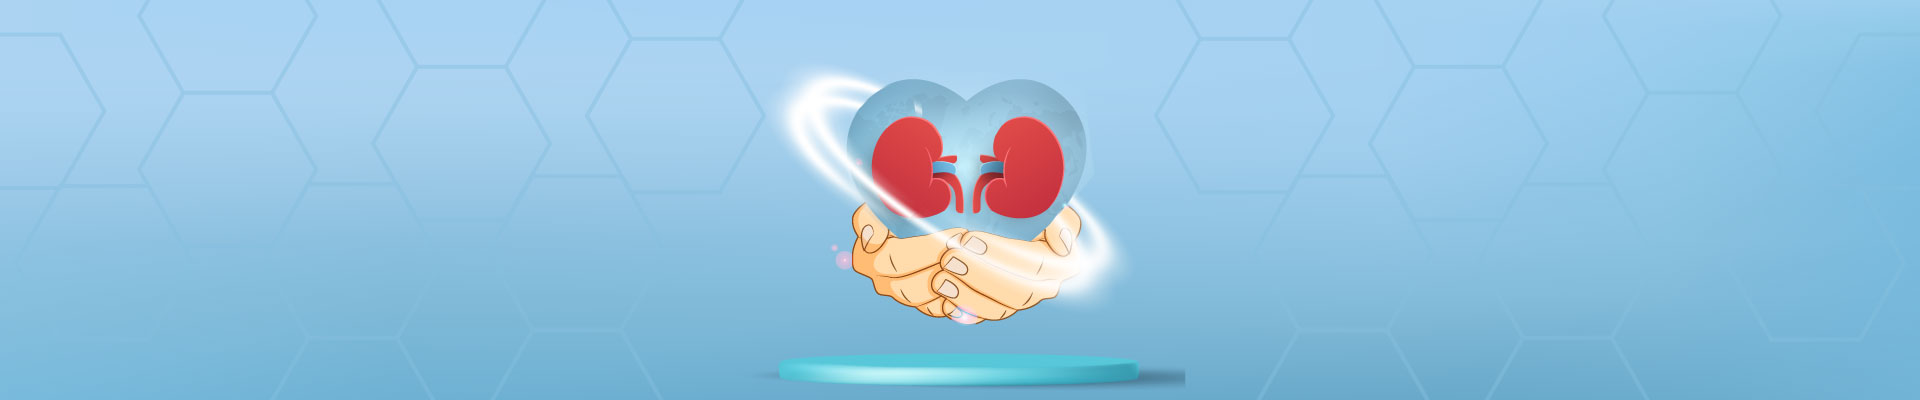 financial help for kidney transplants